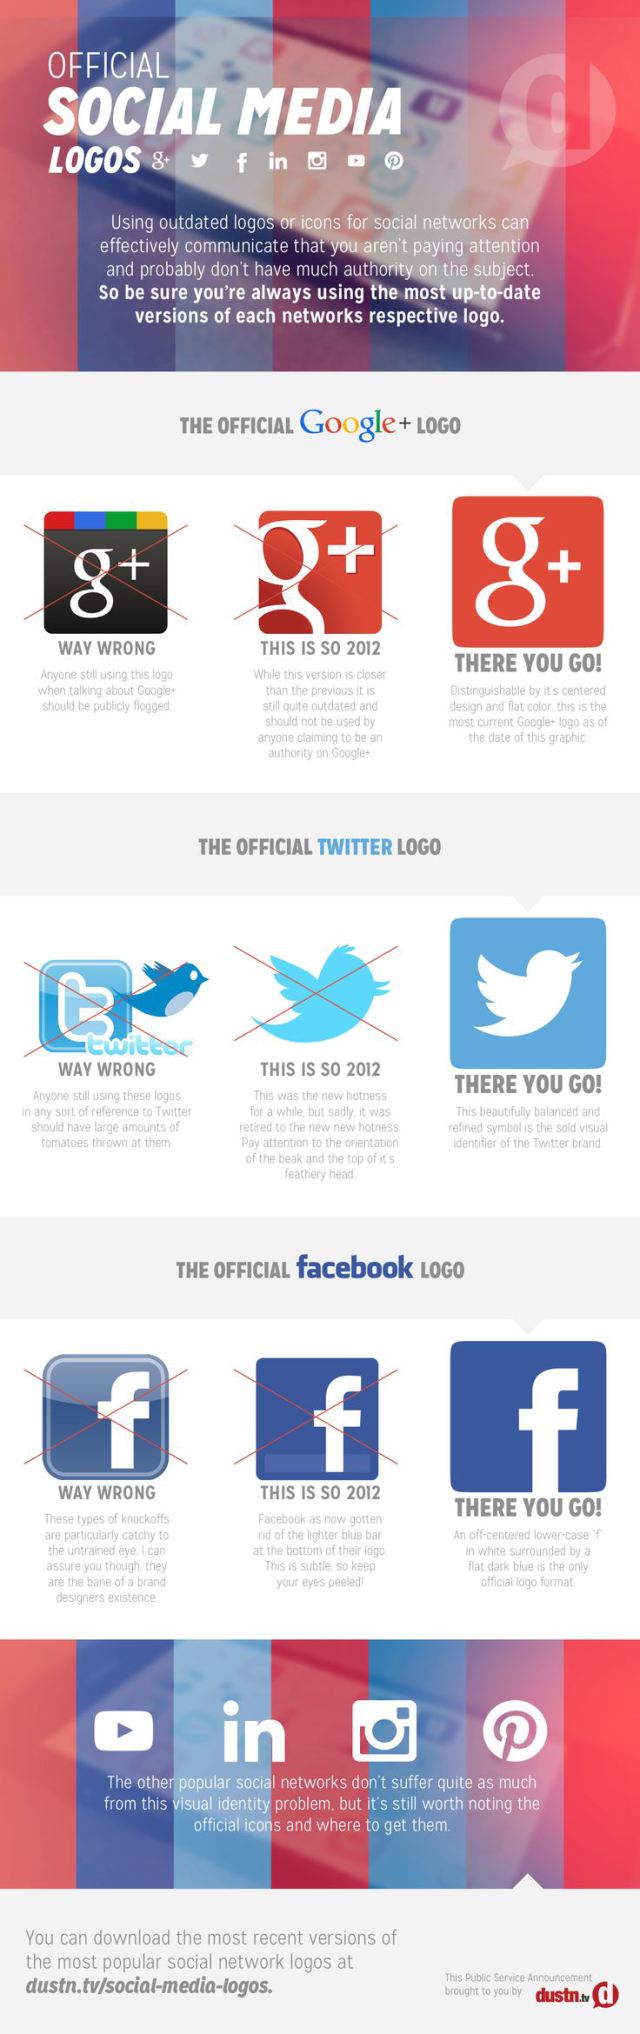 infografia_los_logos_oficiales_de_las_redes_sociales